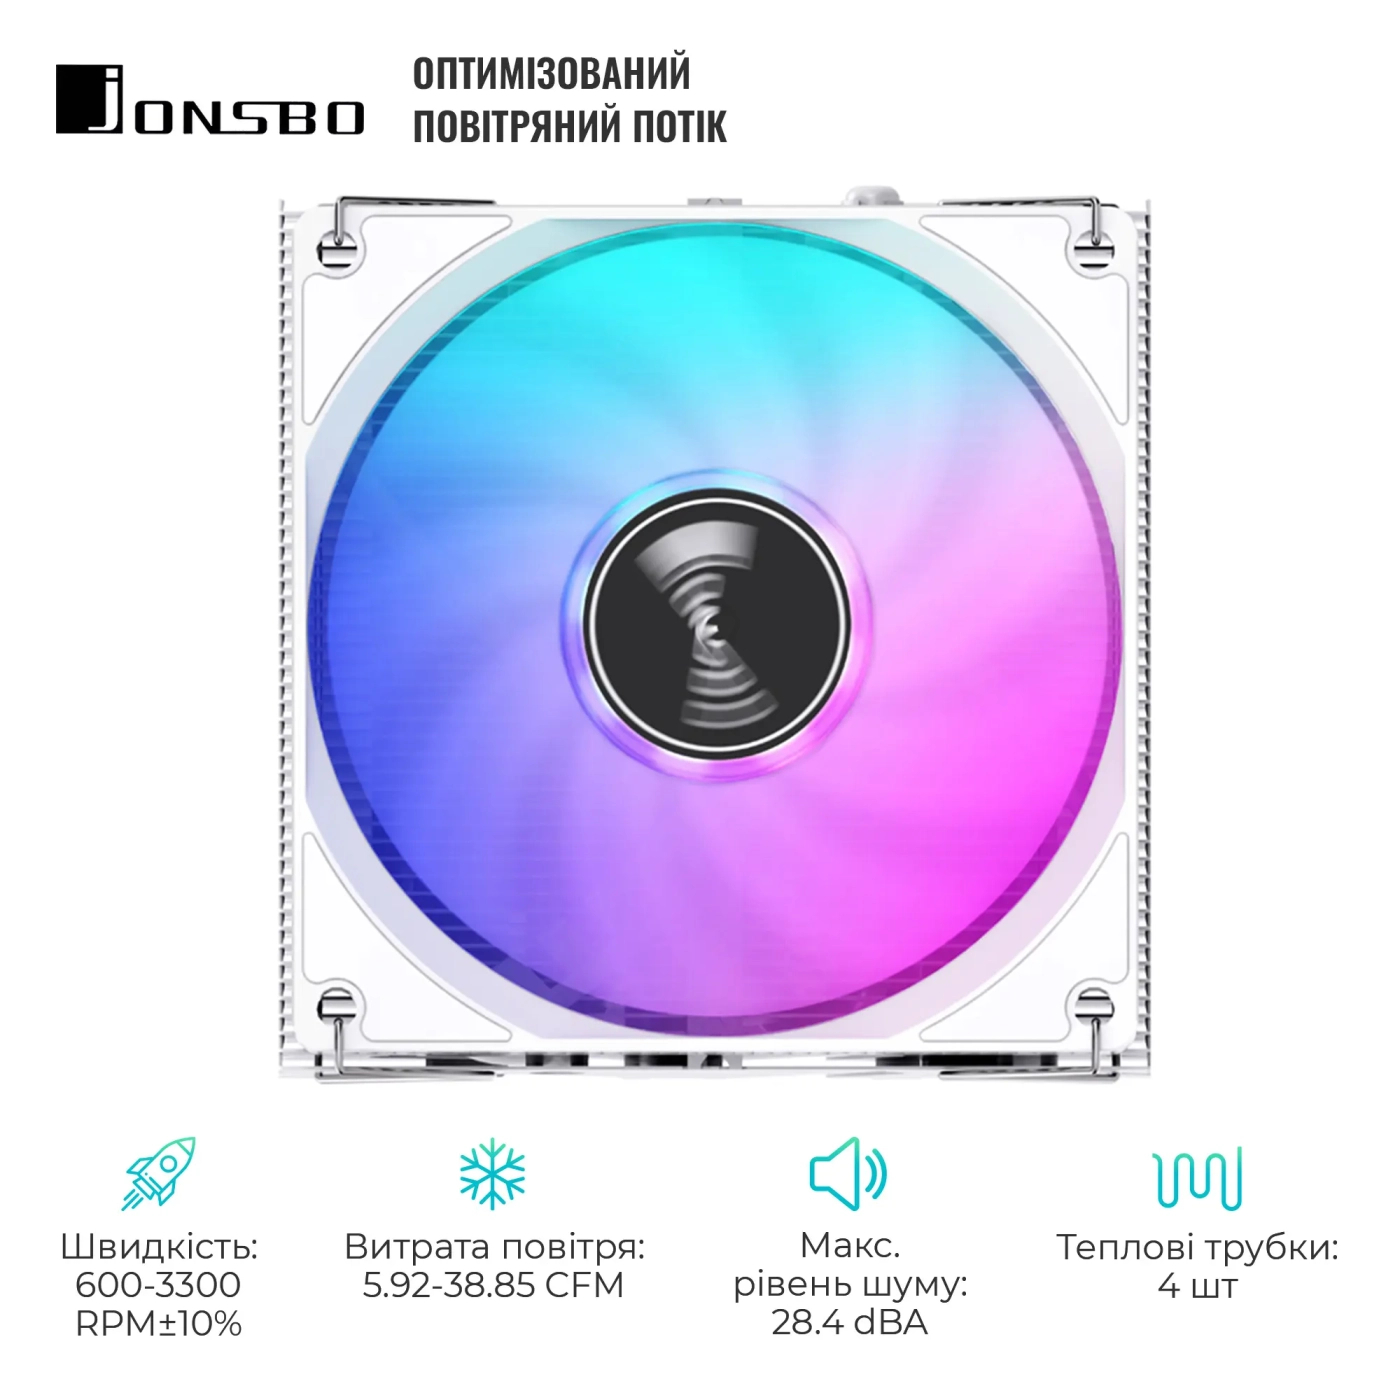 Купить Процессорный кулер JONSBO HX4170D White (92mm/4pin/LGA1200/115X/1700/AM4/4PIN PWM) - фото 3